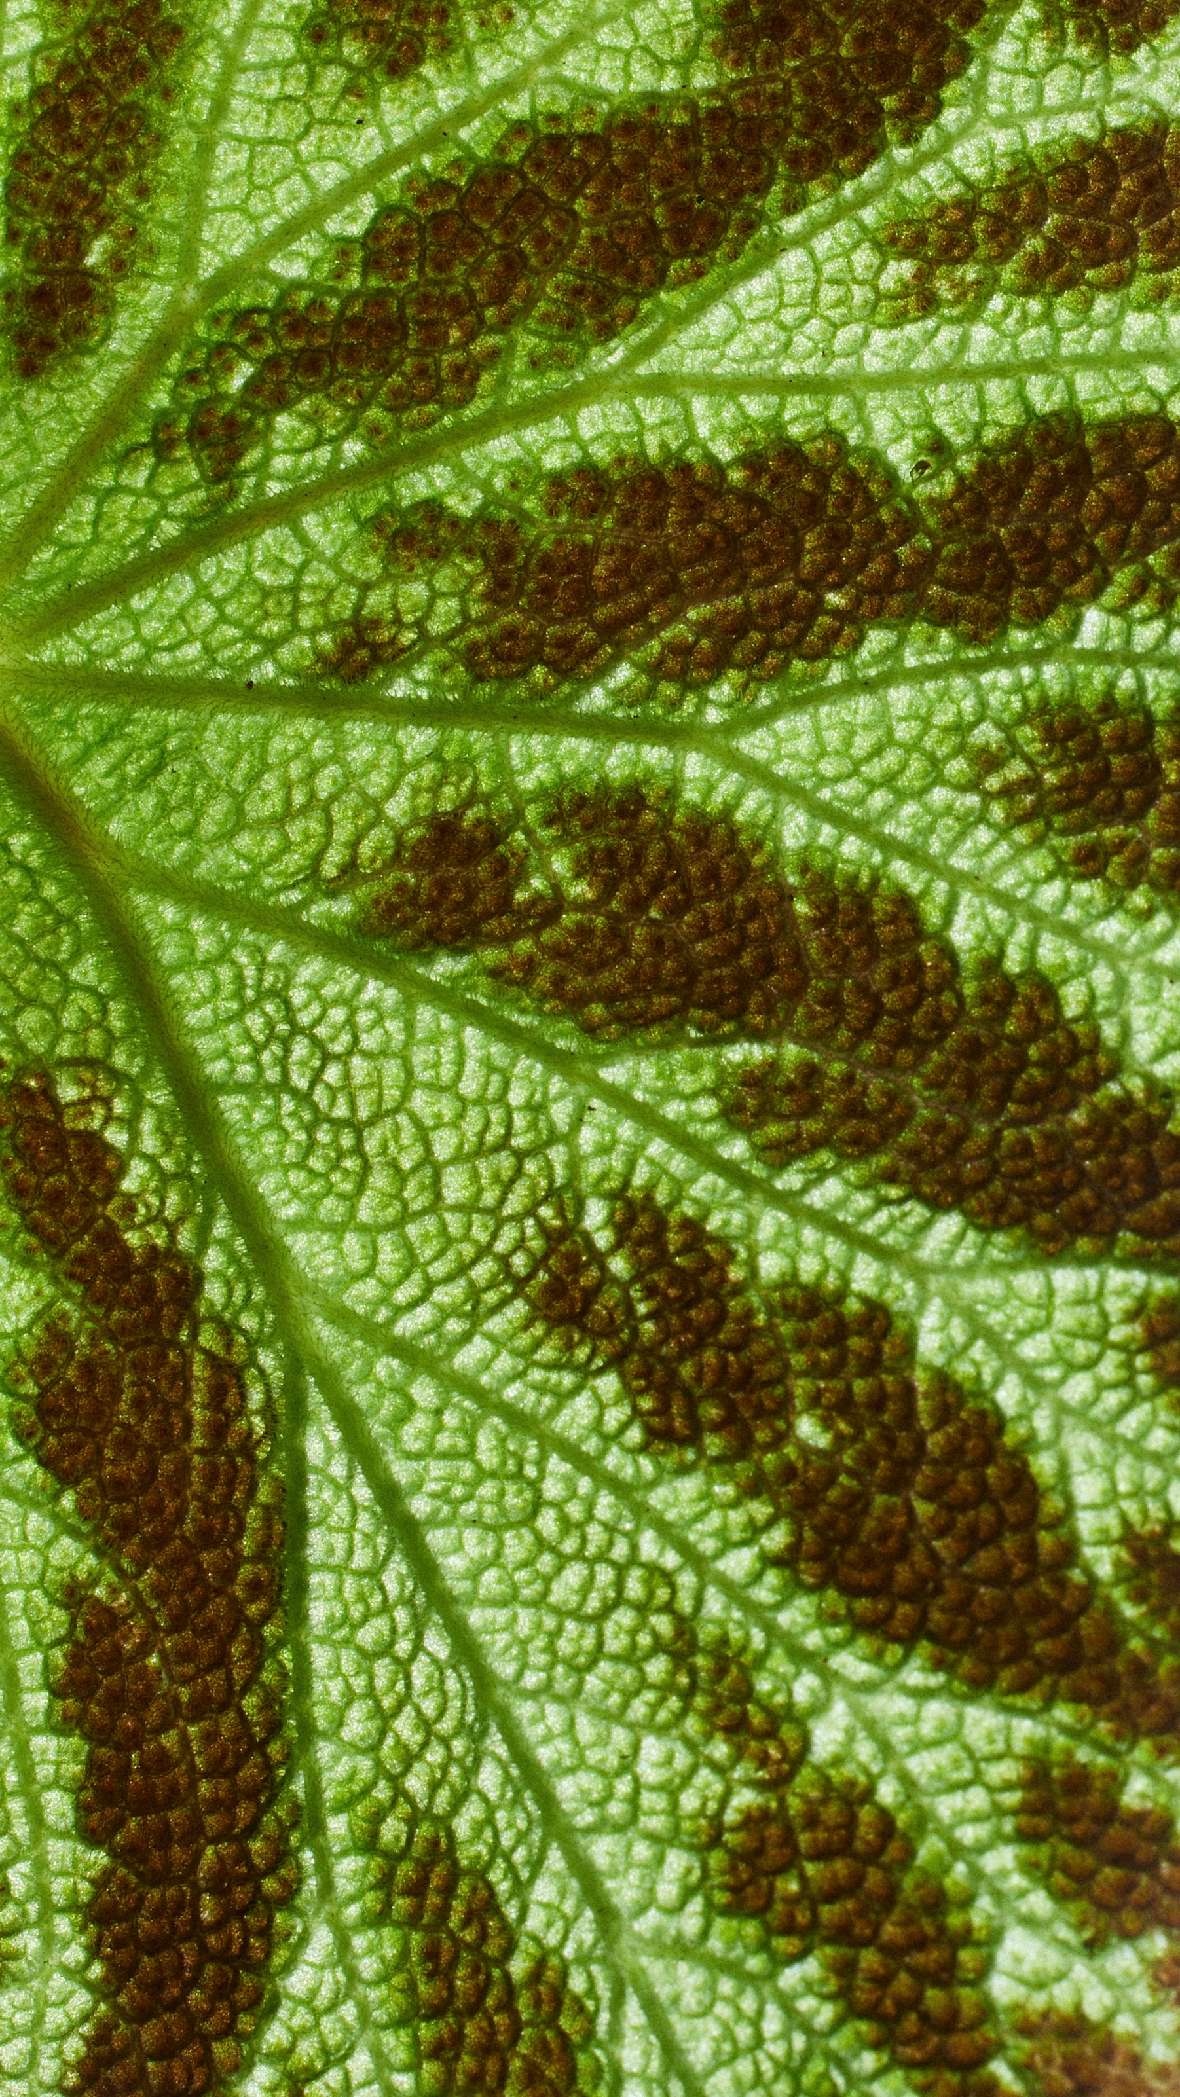 Hellgrünes Blatt mit dunkelbraunen Flecken